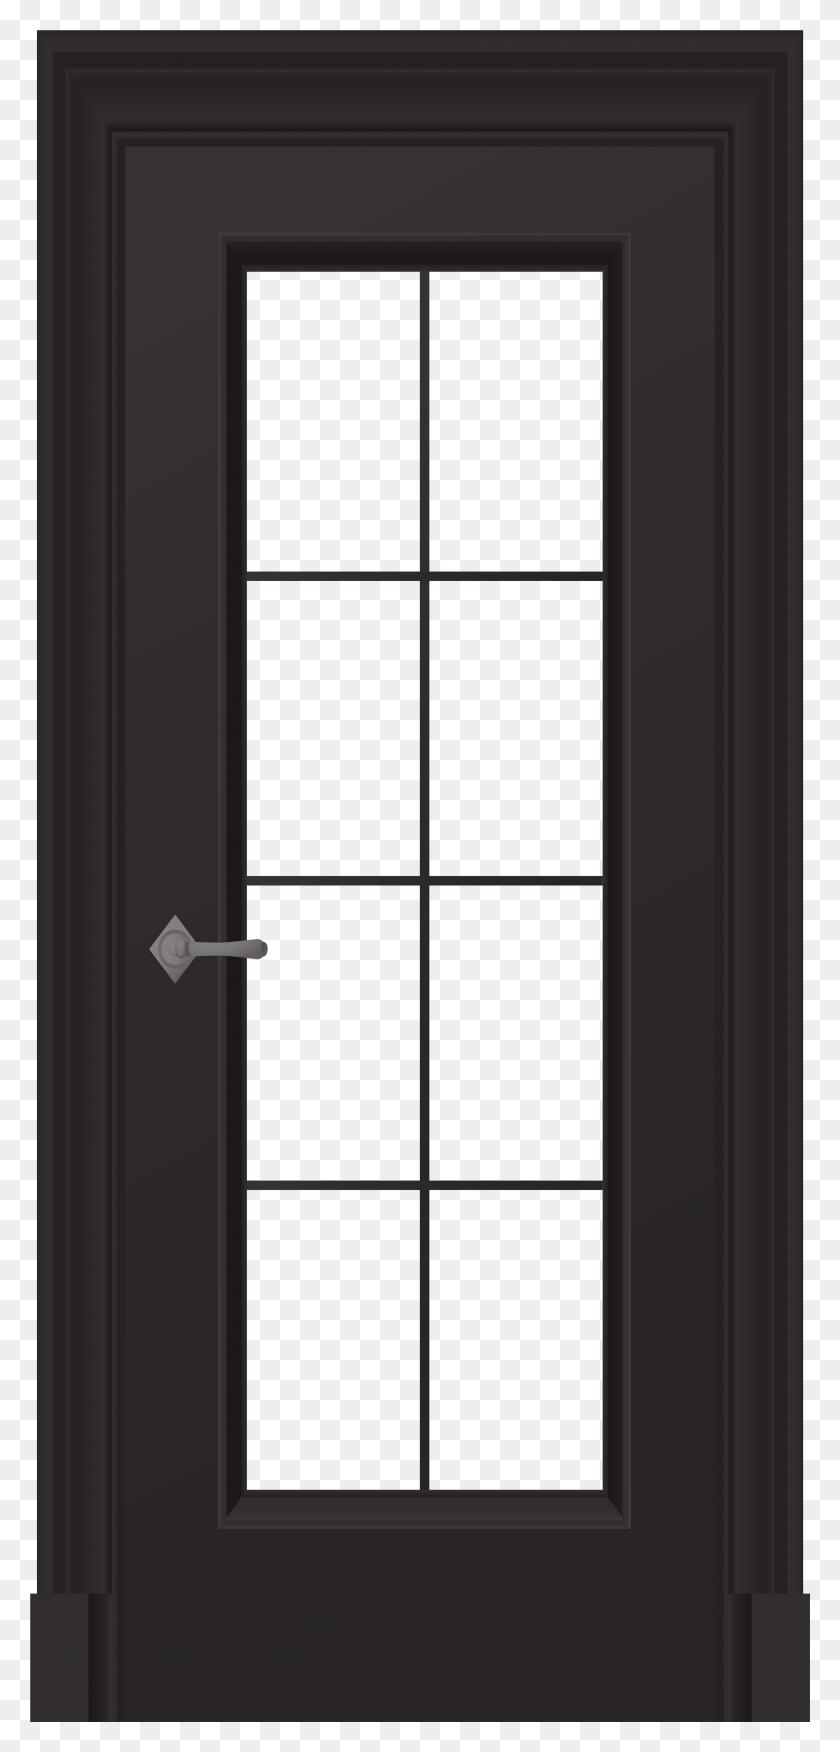 3642x7905 Black Door Clip Art Black Door, French Door, Window, Picture Window HD PNG Download